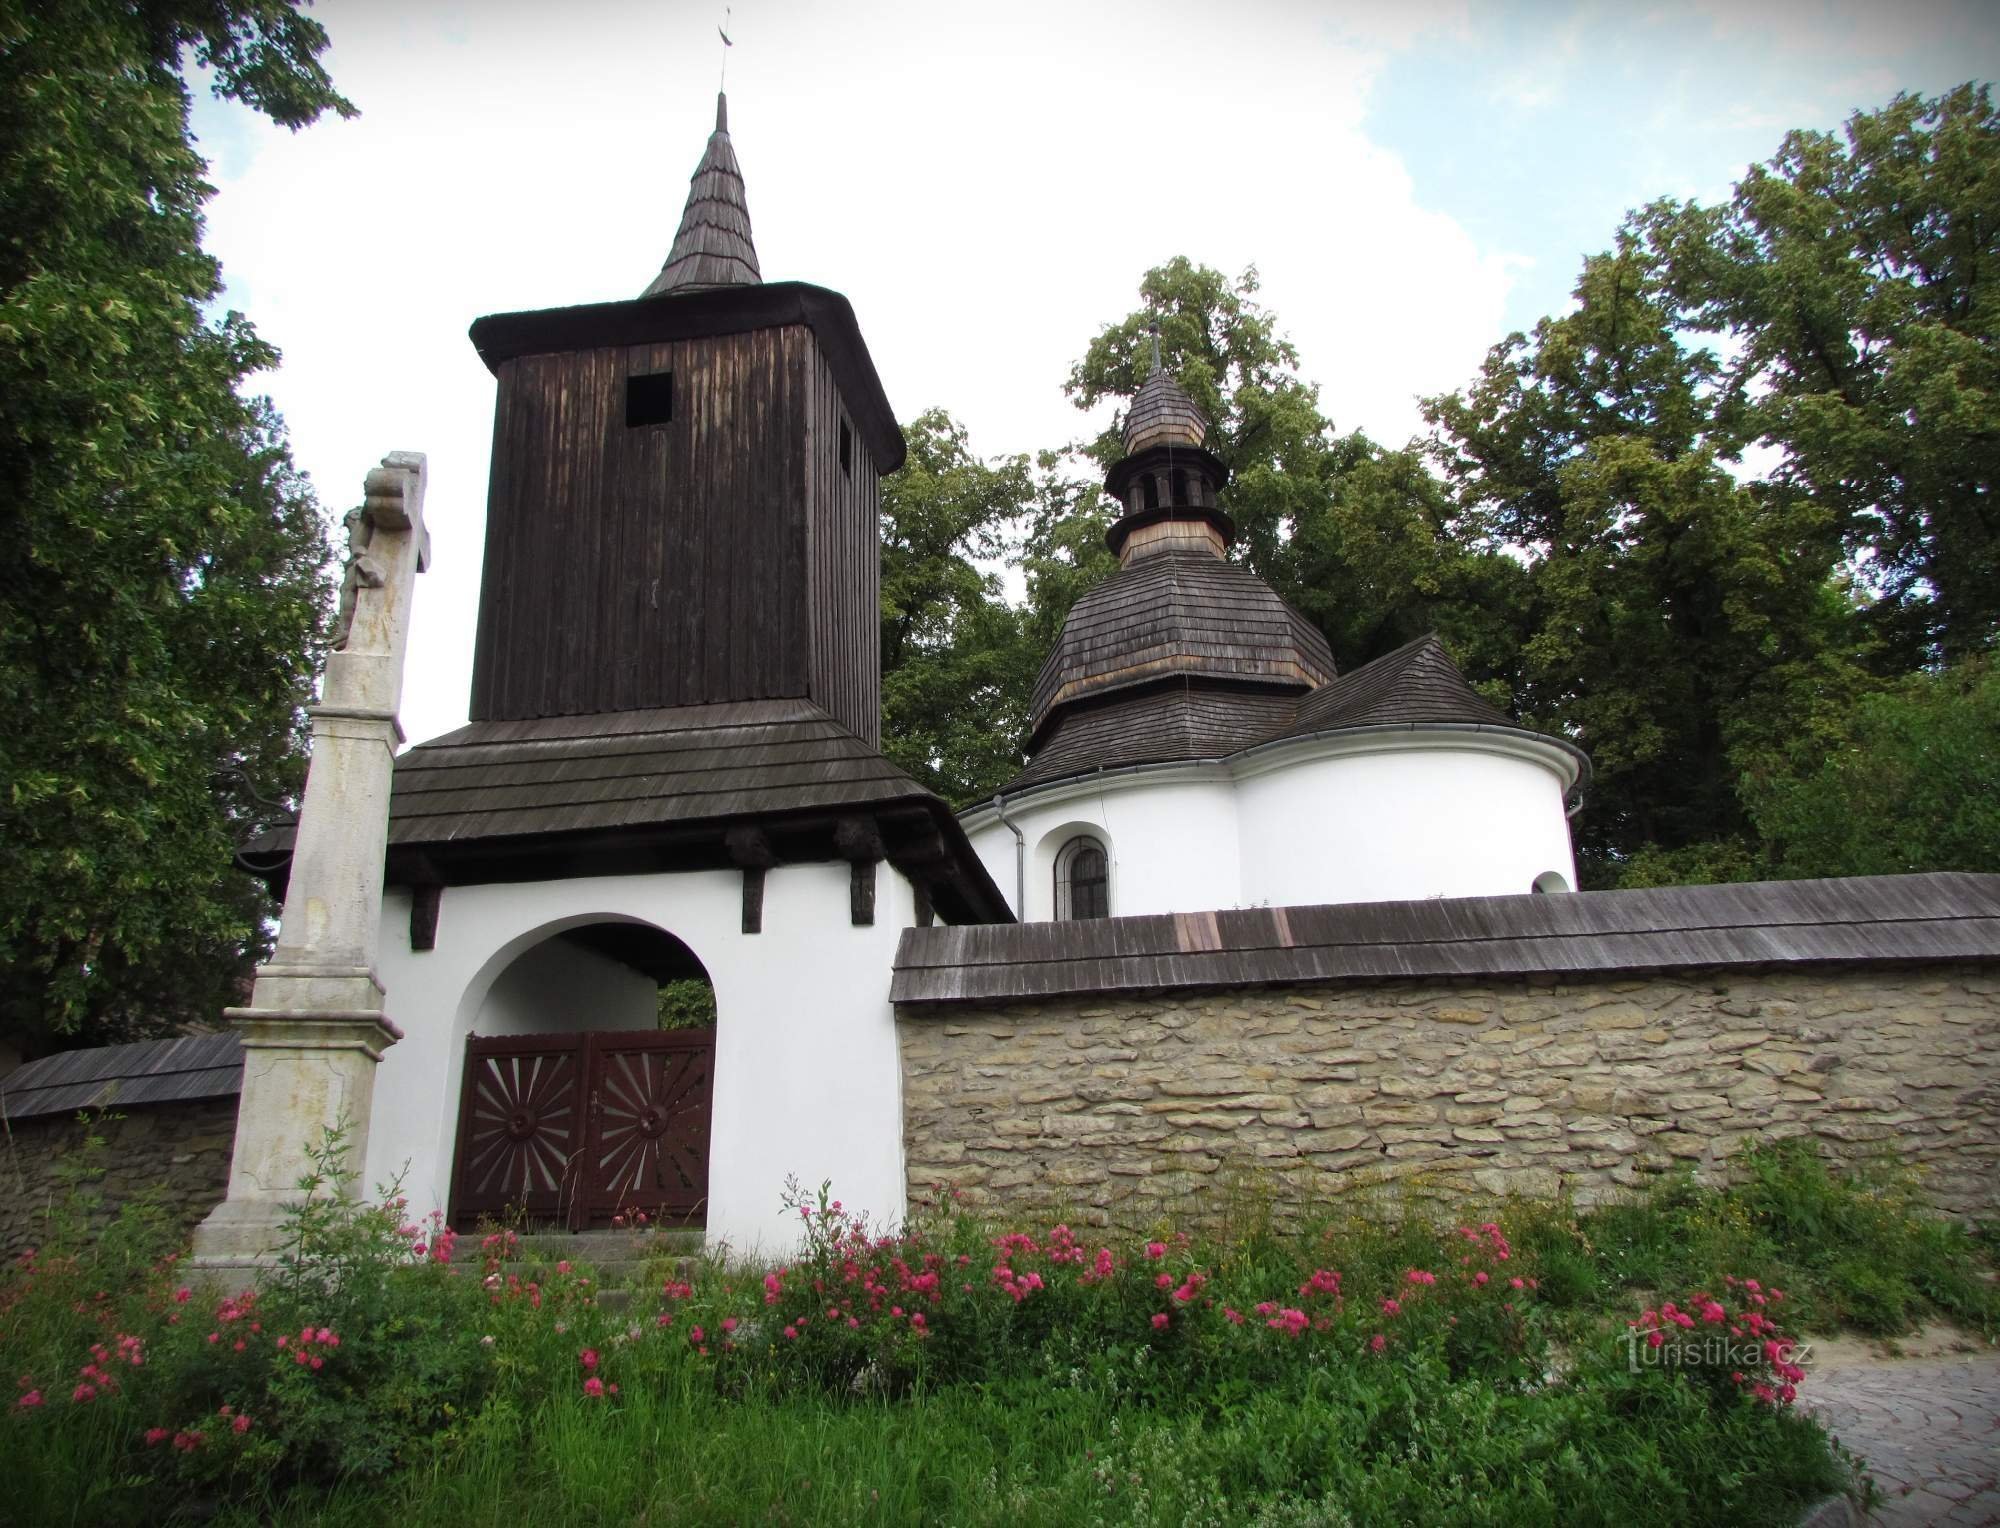 Česká Třebová - το πιο αξέχαστο ιερό κτίριο